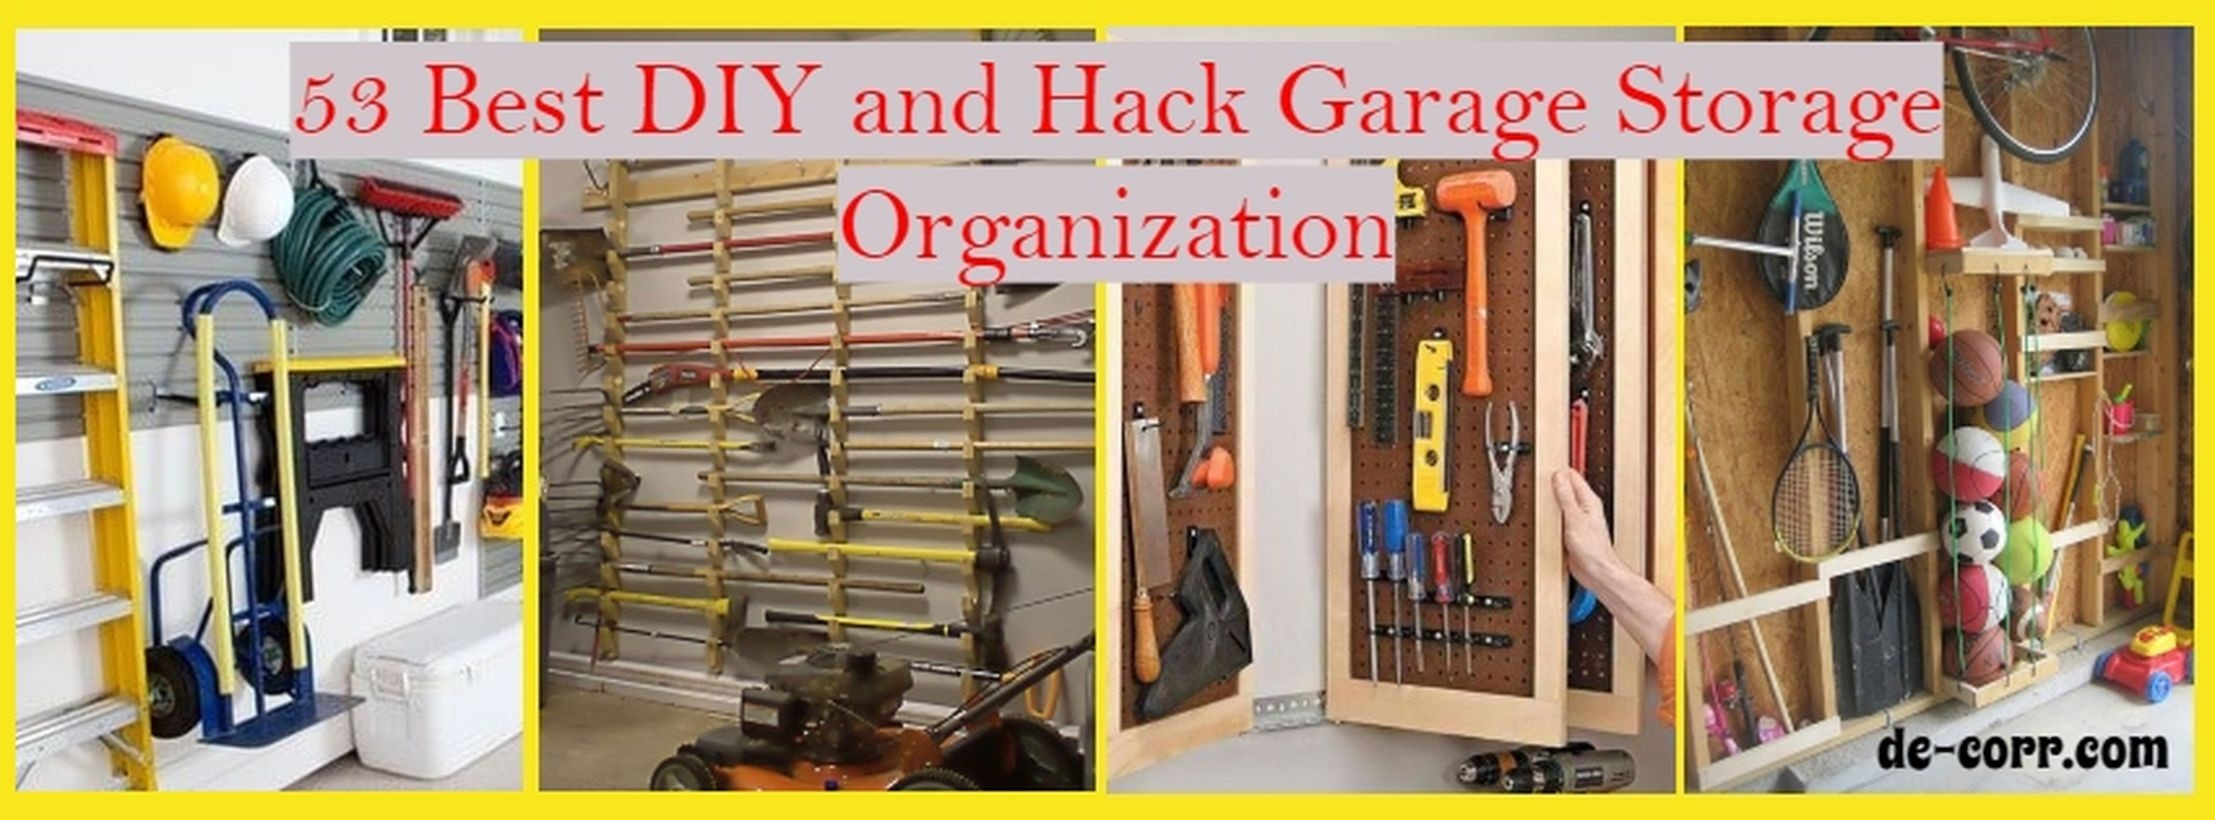 Garage Organizing Hacks
 53 Best DIY and Hack Garage Storage Organization De corr